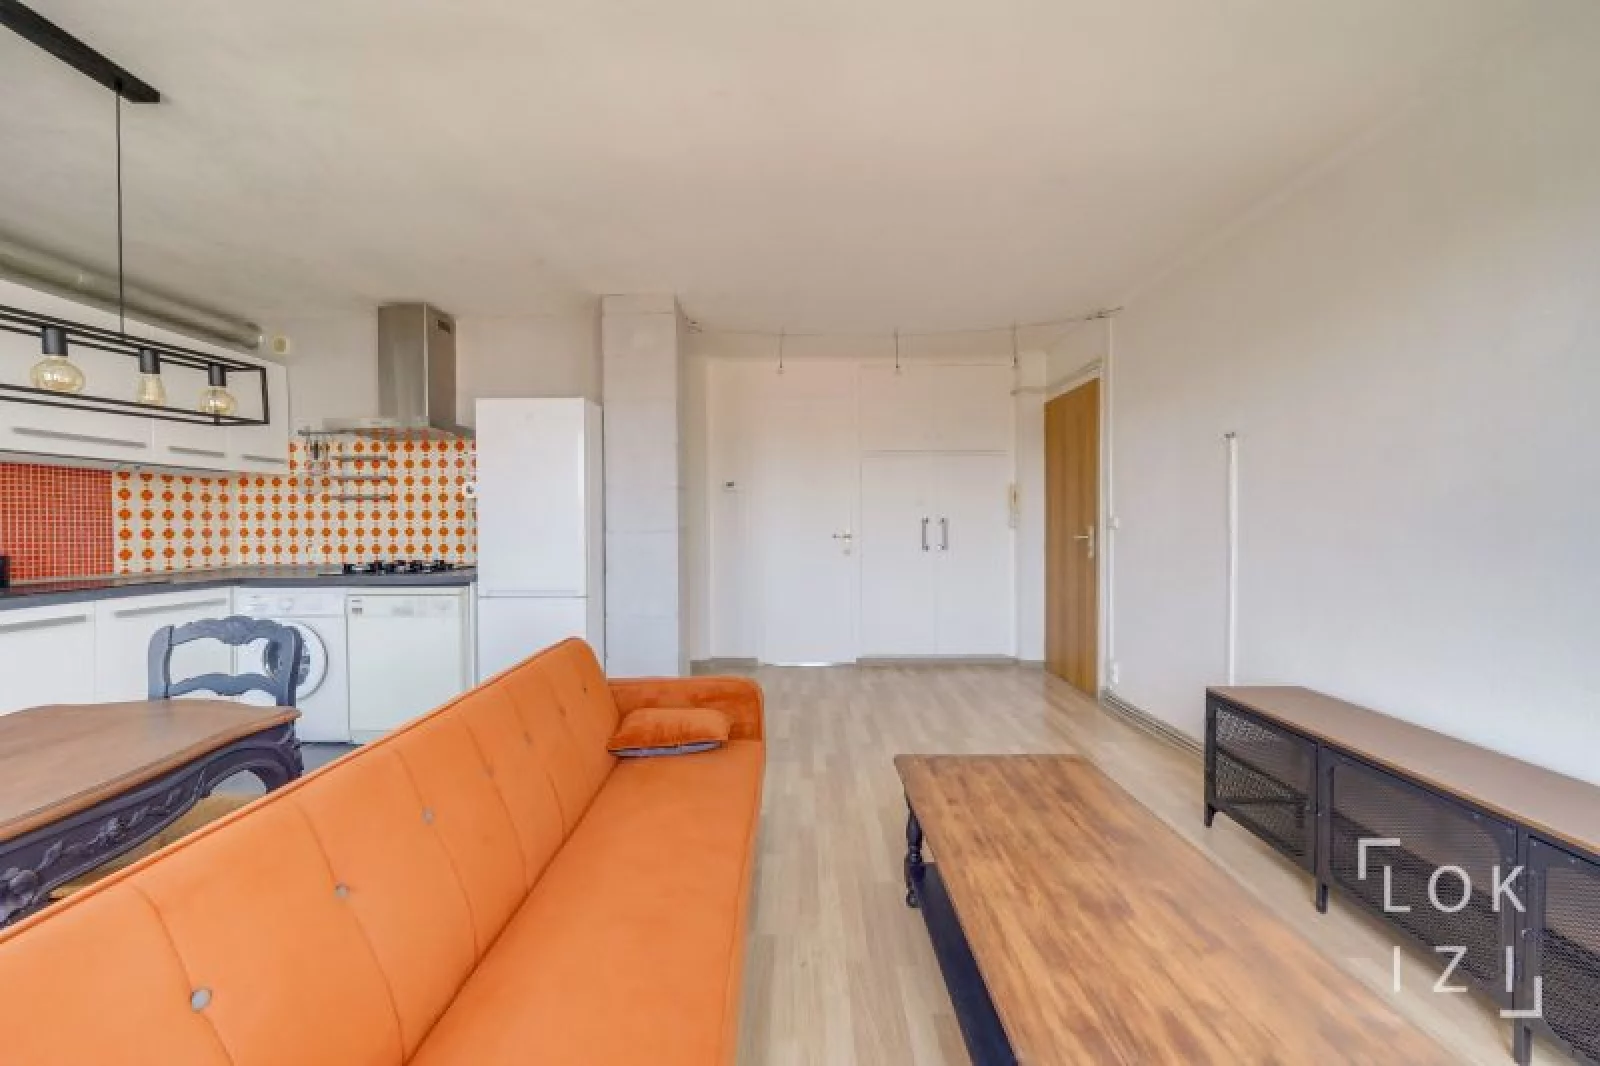 Location appartement meublé 3 pièces 54m² (Bordeaux - Chartrons)